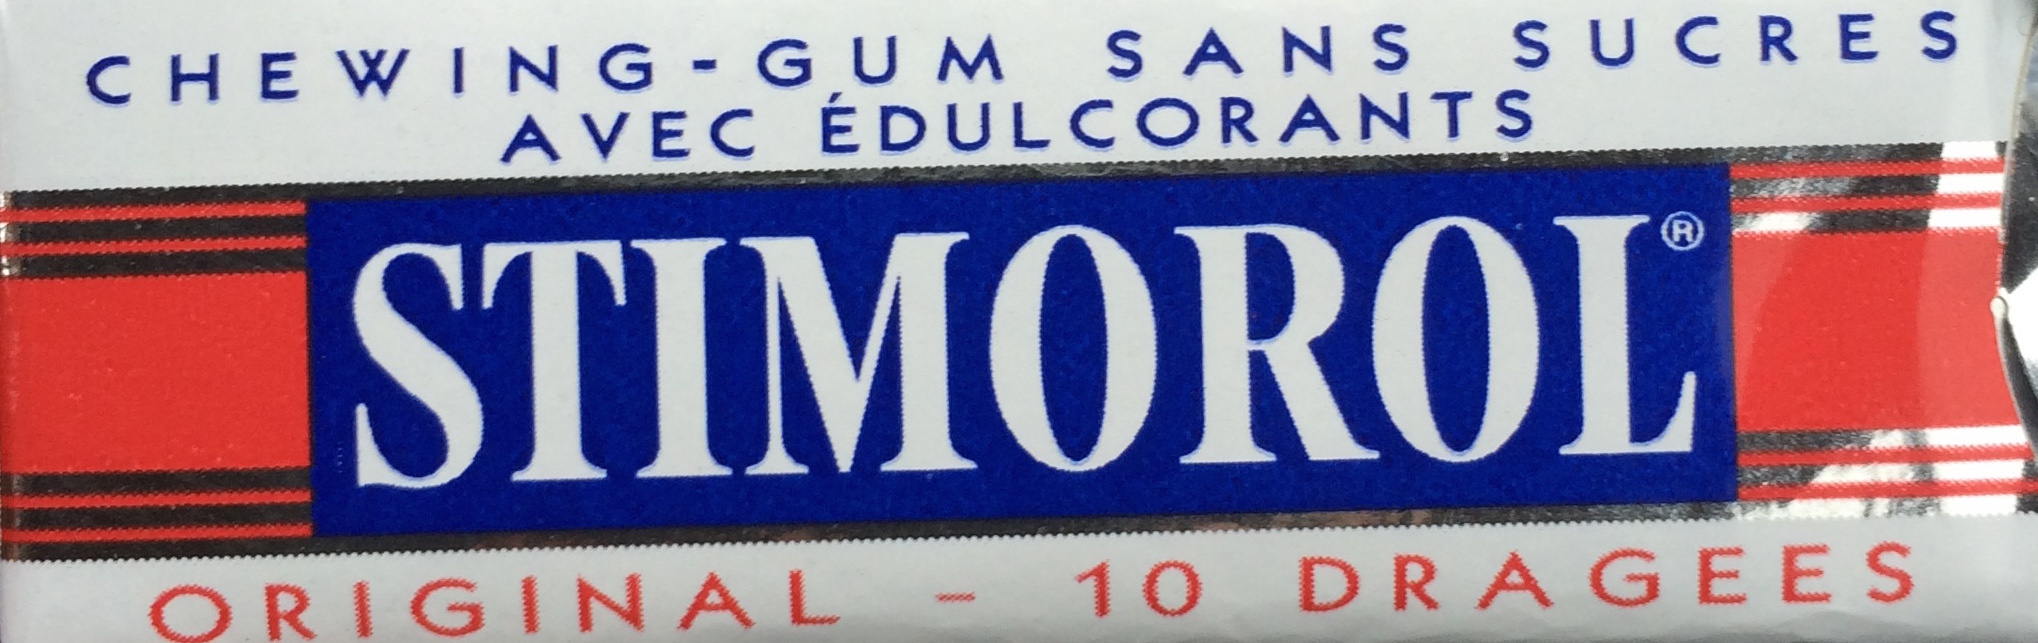 Stimorol Original sans sucres - Product - fr